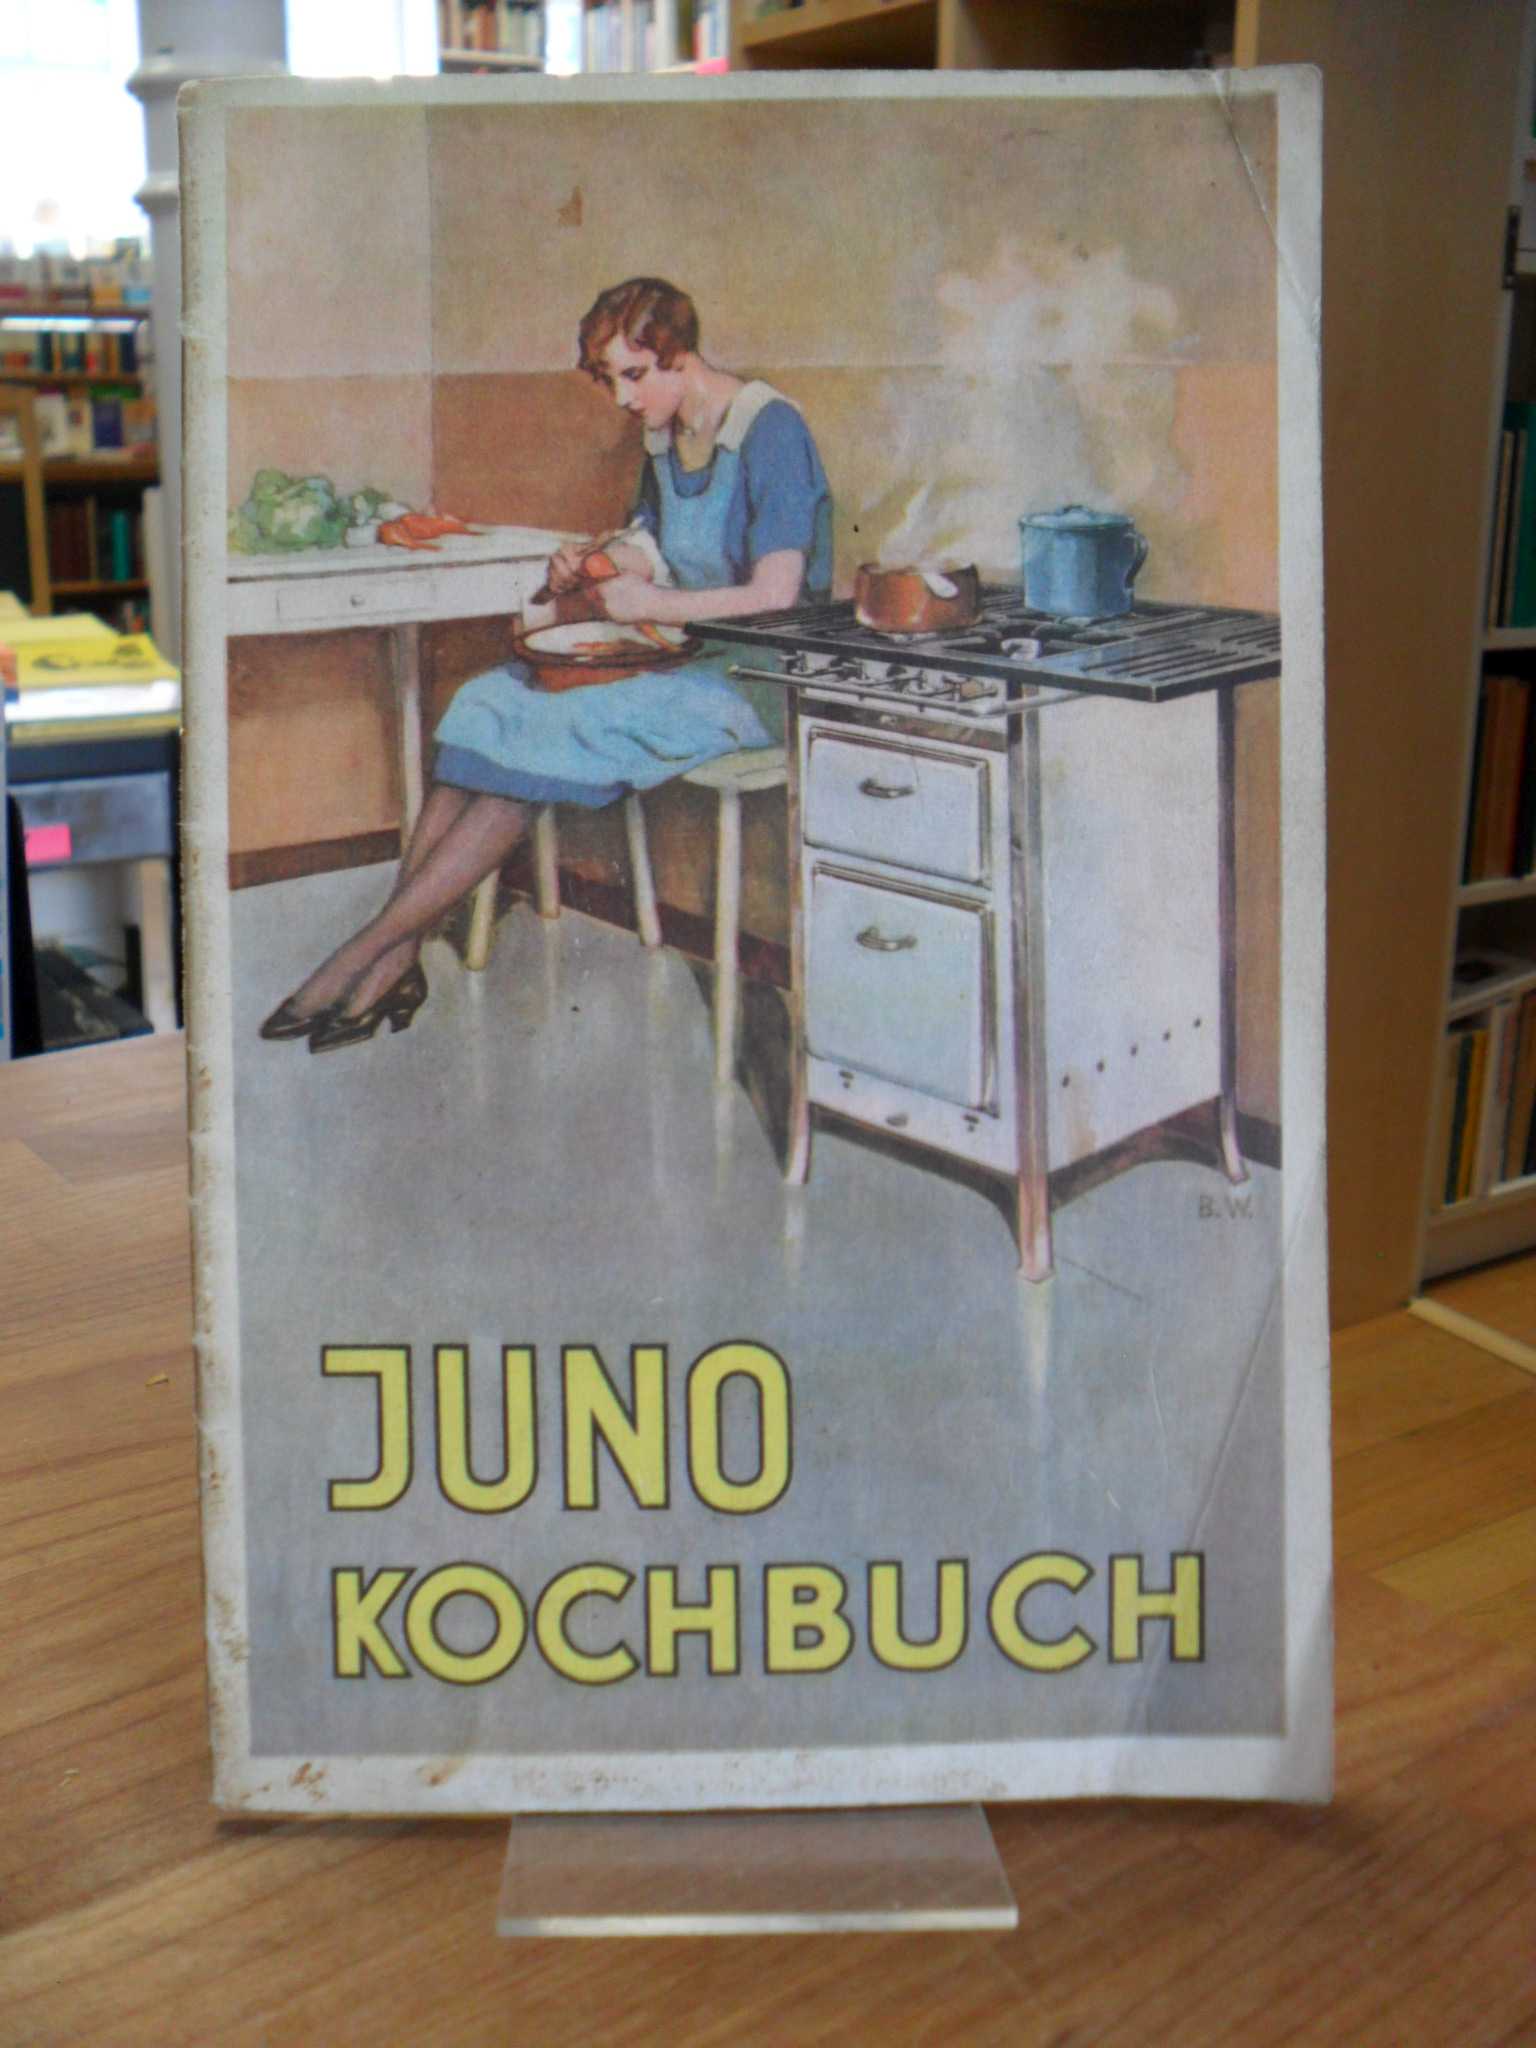 JUNO GASKOCHER, Juno Kochbuch mit Anleitung für Juno Gaskocher, Gasherde, kombin